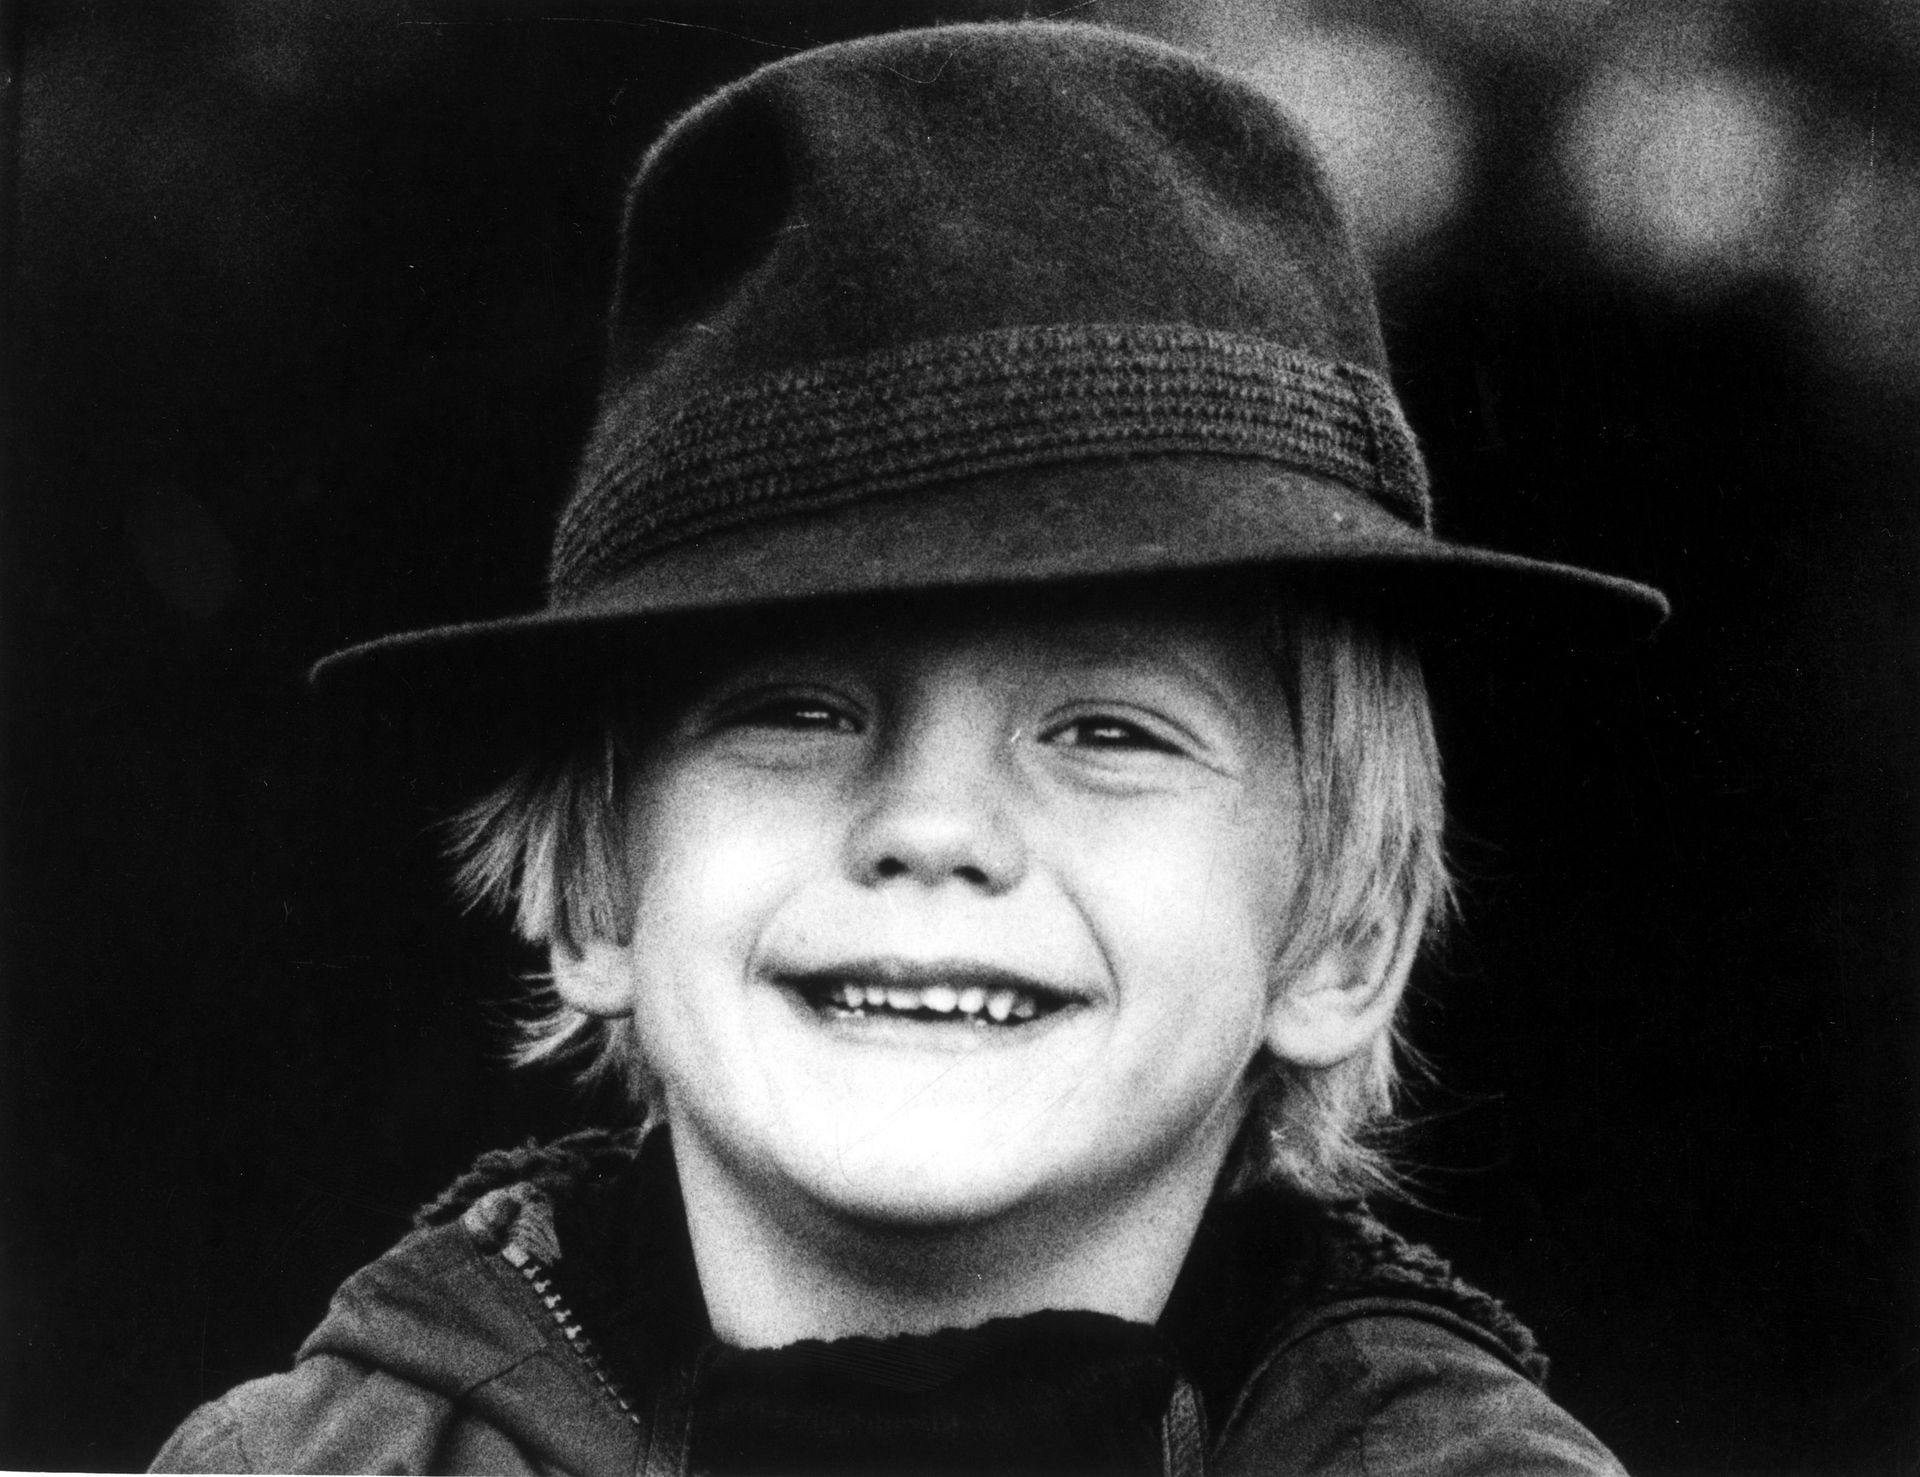 Op 22 maart 1978 wordt prins Pieter-Christiaan zes jaar oud. Deze vrolijke foto van de jarige prins is door zijn vader gemaakt.